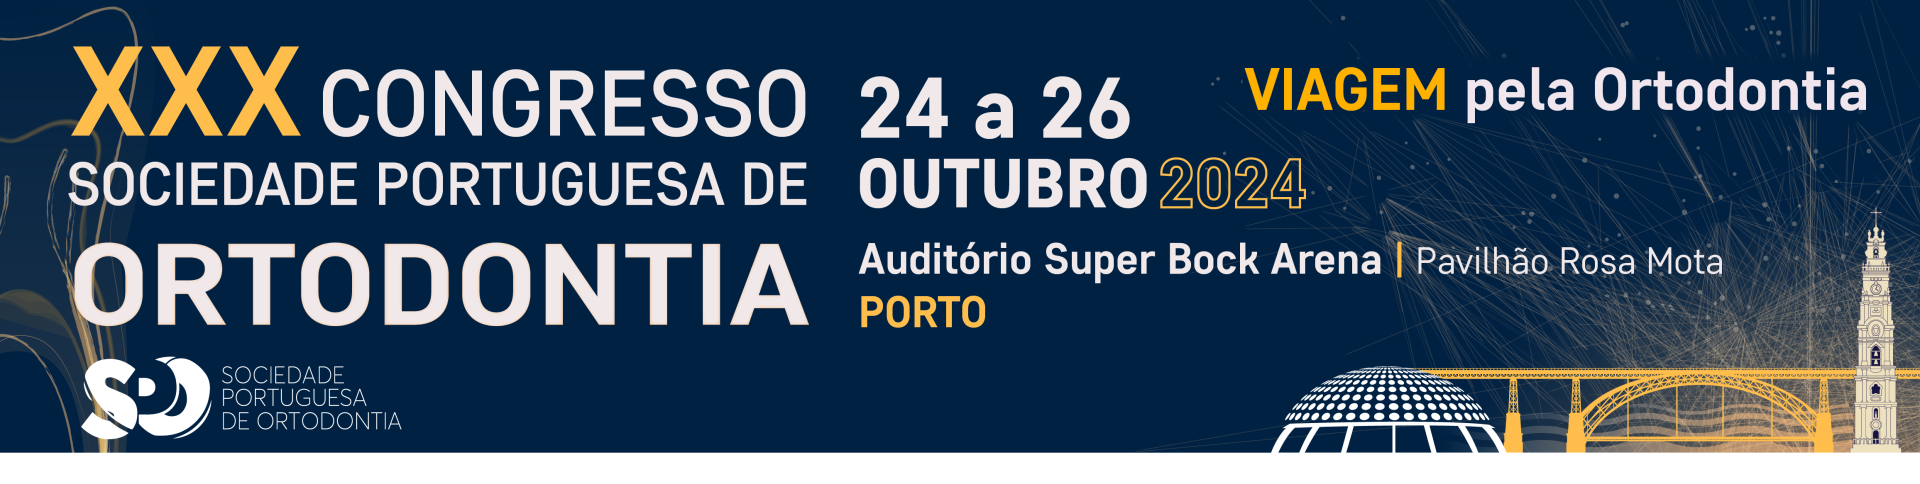 XXX Congresso da Sociedade Portuguesa de Ortodontia